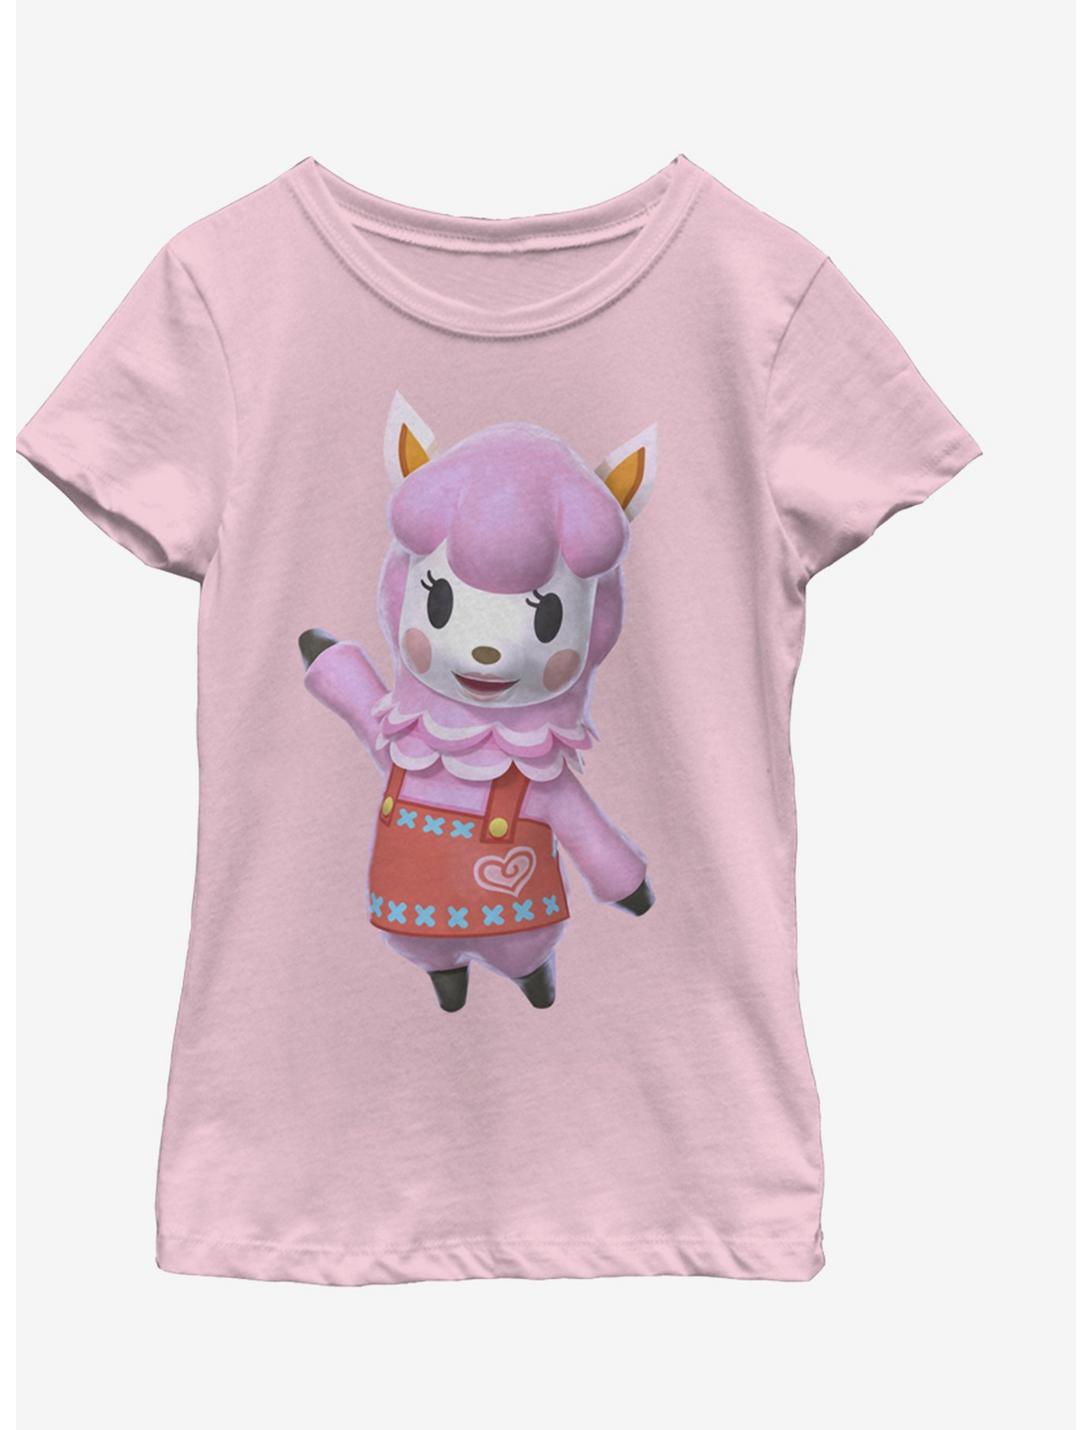 Nintendo Reese Pose Youth Girls T-Shirt, PINK, hi-res